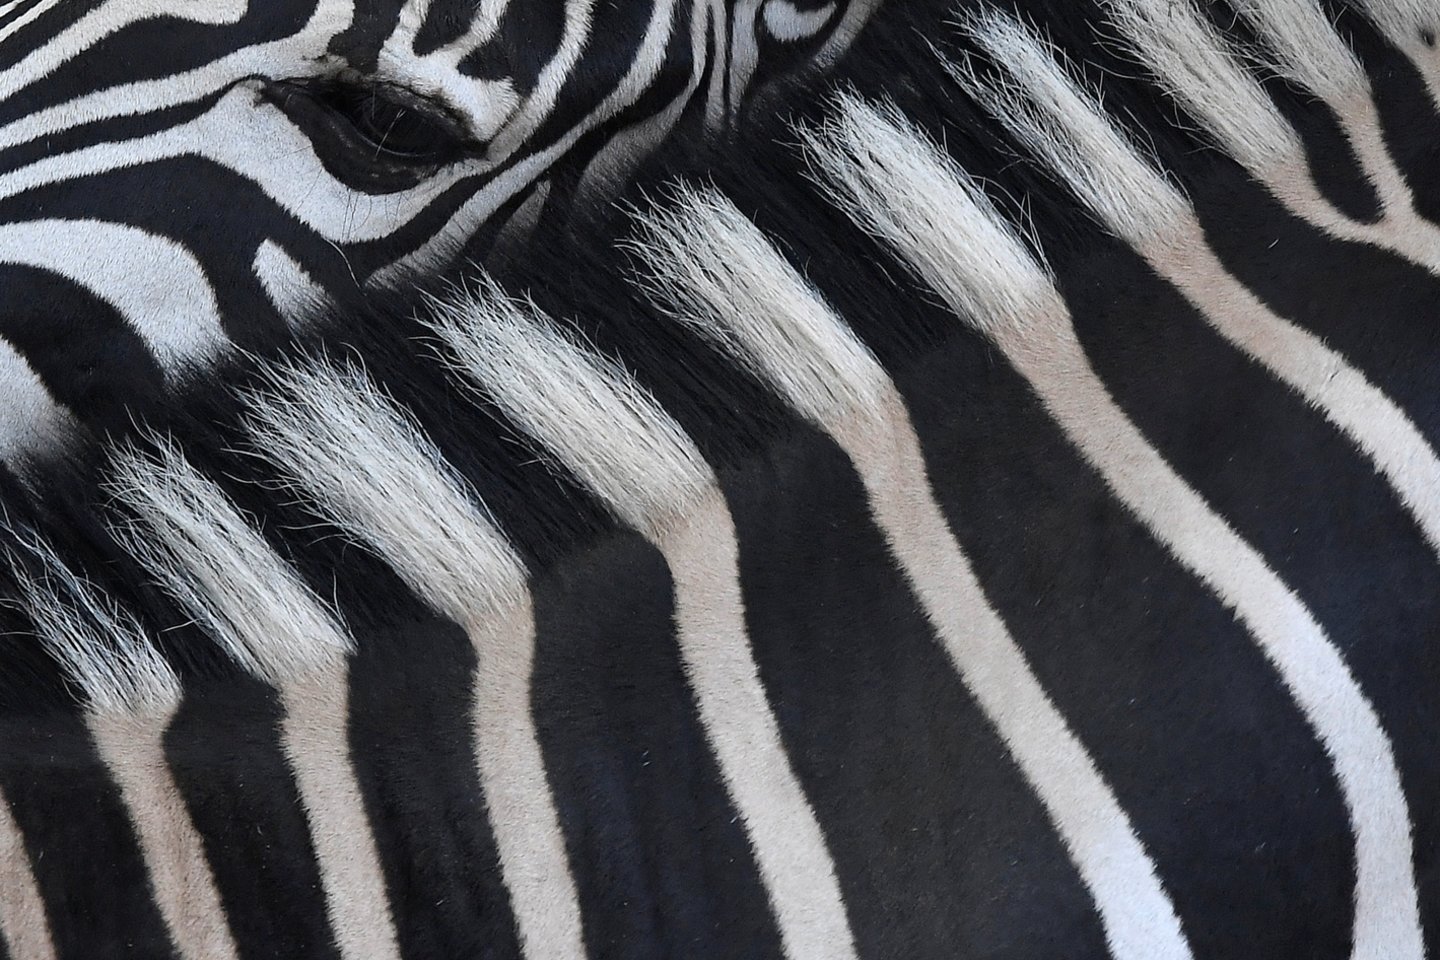  Zebrų dryžiai yra ypatingi kaip pirštų atspaudai. Pseudomelanizmas lemia tam tikras spalvų mutacijas, kurios pasireiškia itin retai.<br> Scanpix/Reuters/AFP nuotr.